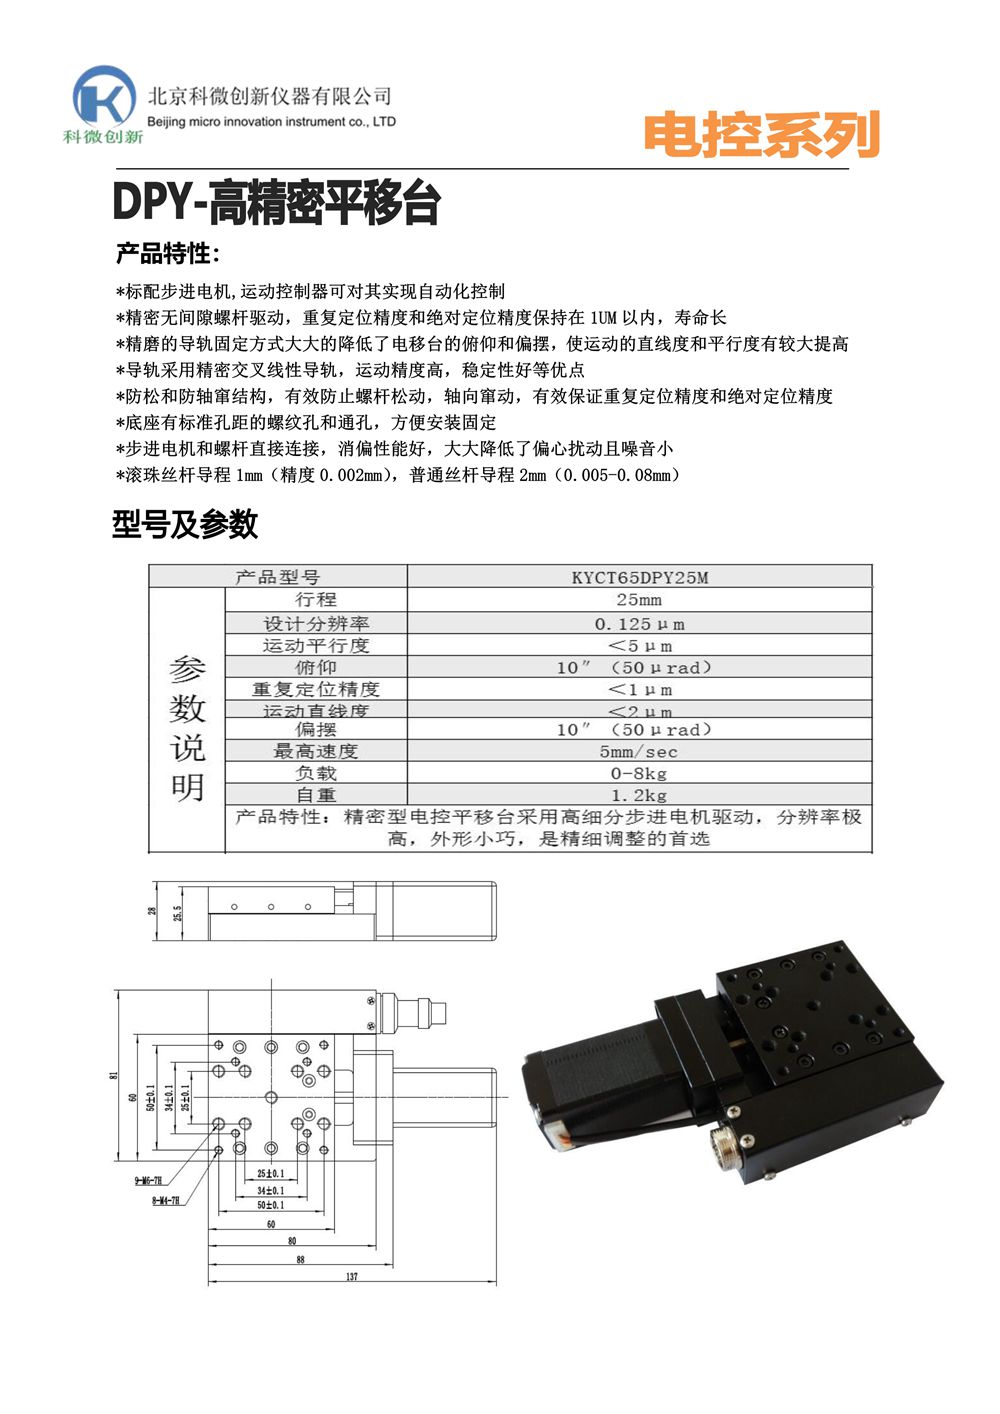 KYCT65DPY25M高精度平移台产品宣传_1 - 副本.Jpeg